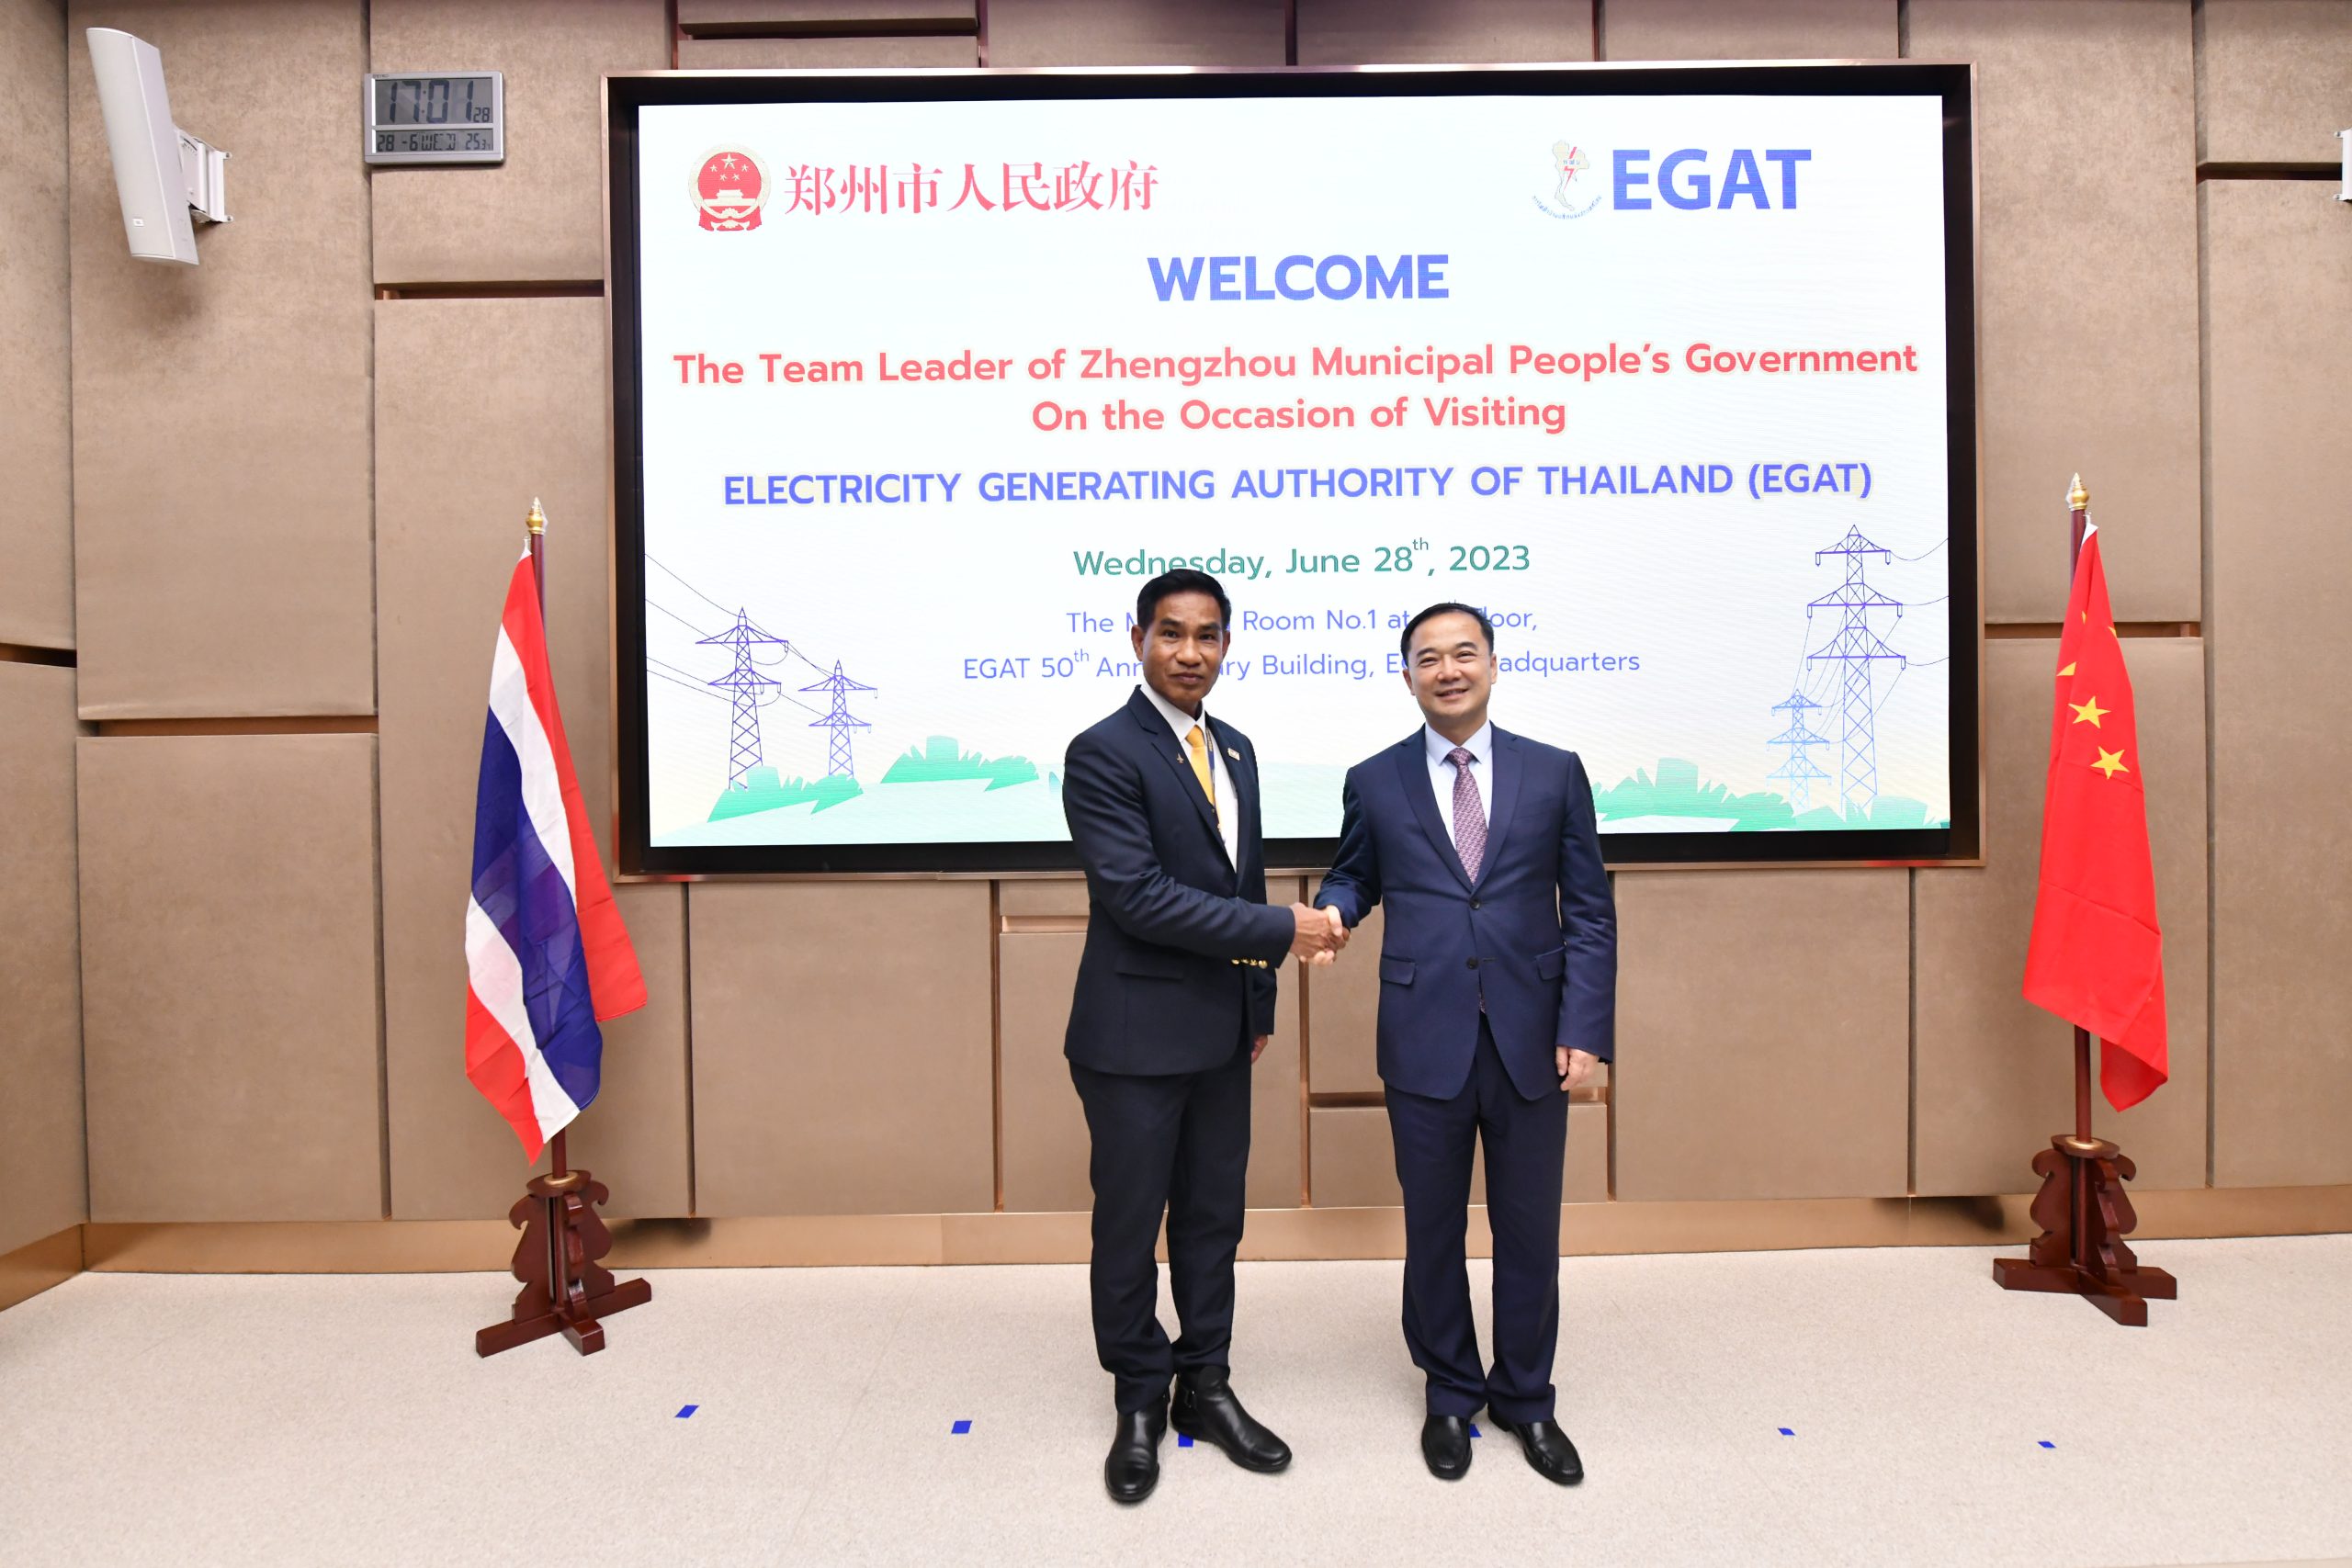 建立中泰电力能源友谊，泰国国家电力局热烈欢迎郑州市市长前来交流电力输送方面的知识，共谋可持续经济发展道路。